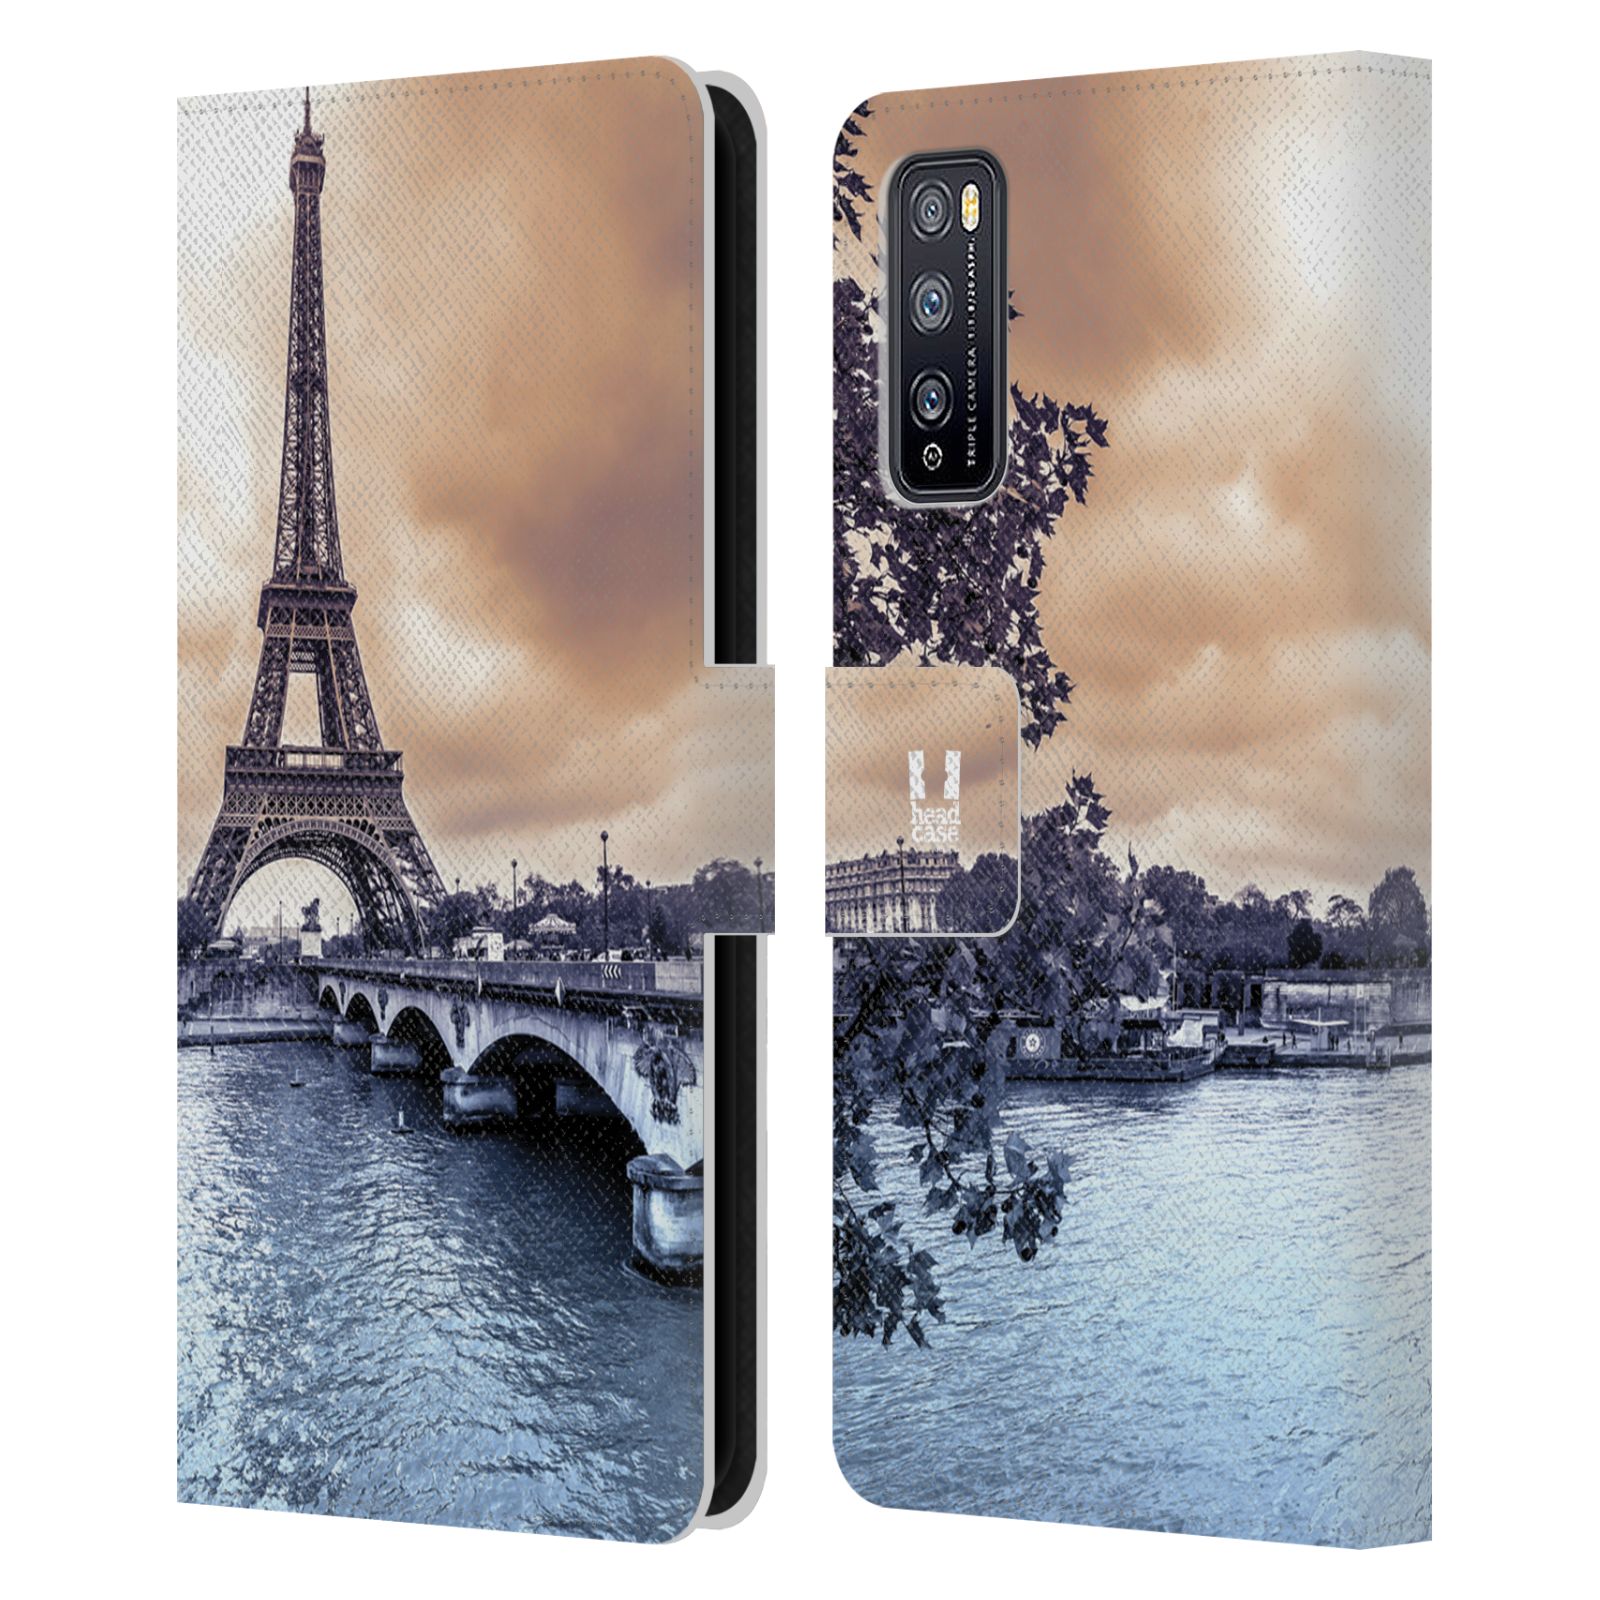 Pouzdro pro mobil Huawei Enjoy Z 5G - Eiffelova věž Paříž - Francie